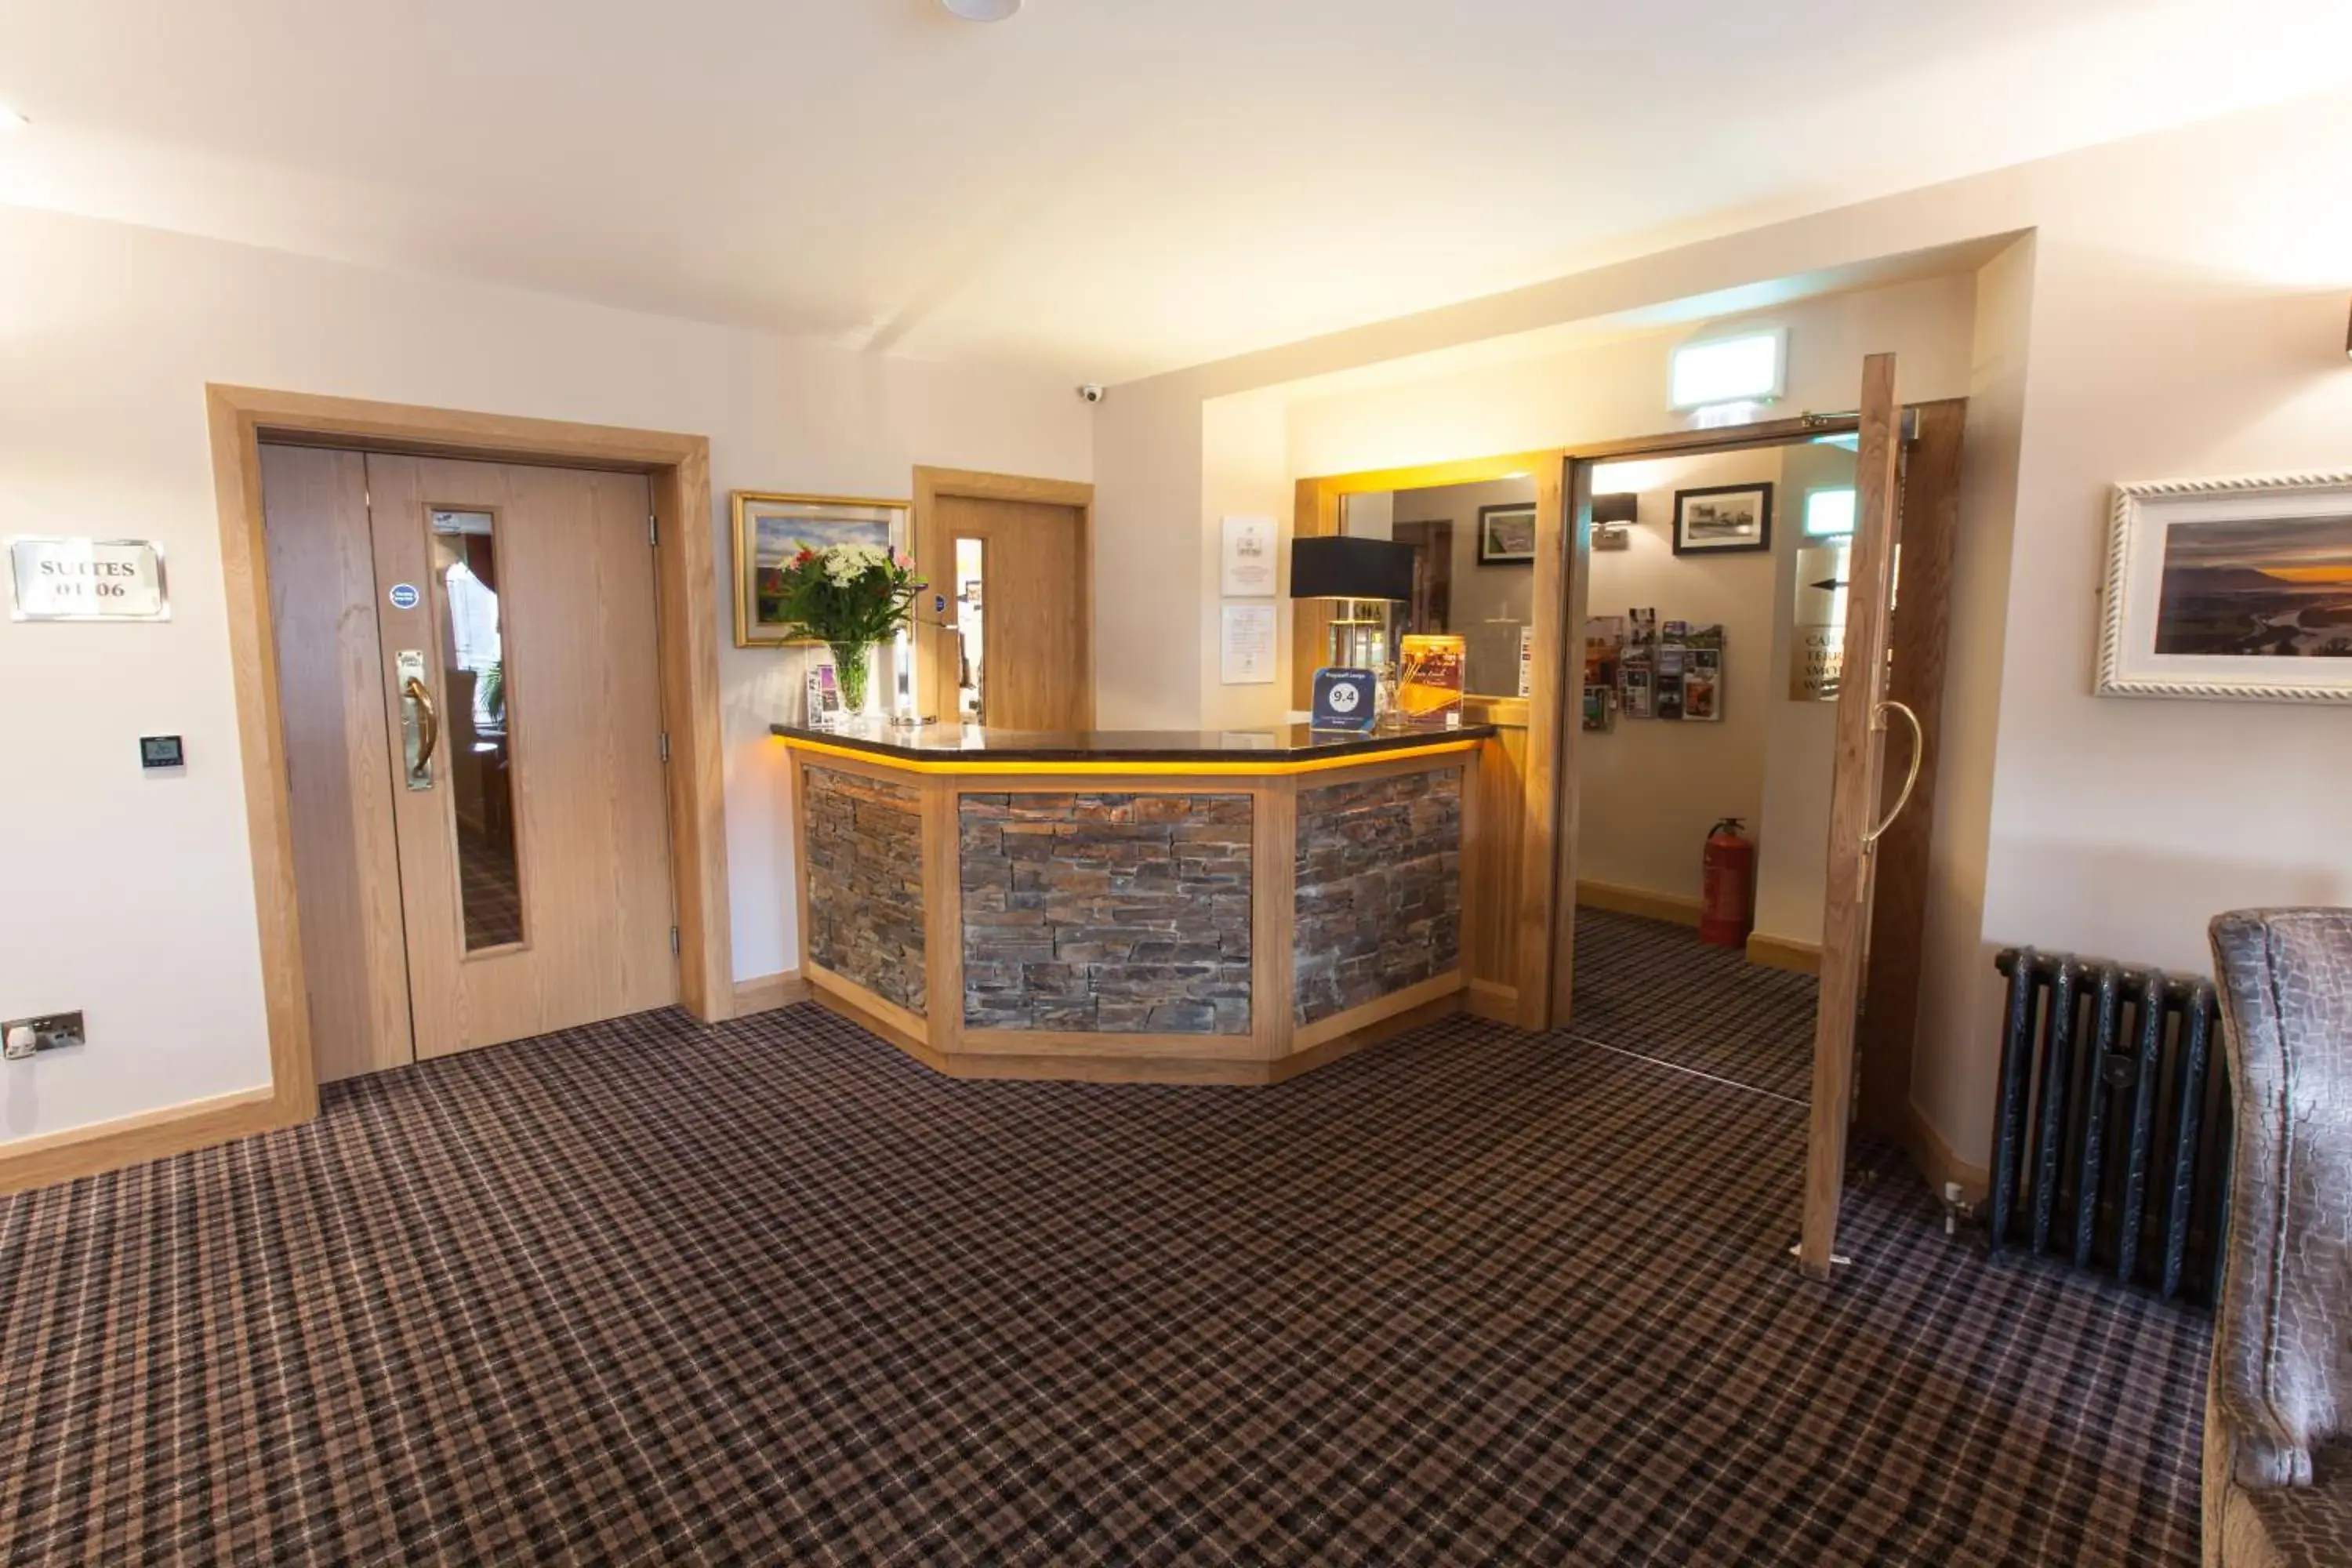 Lobby or reception, Lobby/Reception in Flagstaff Lodge